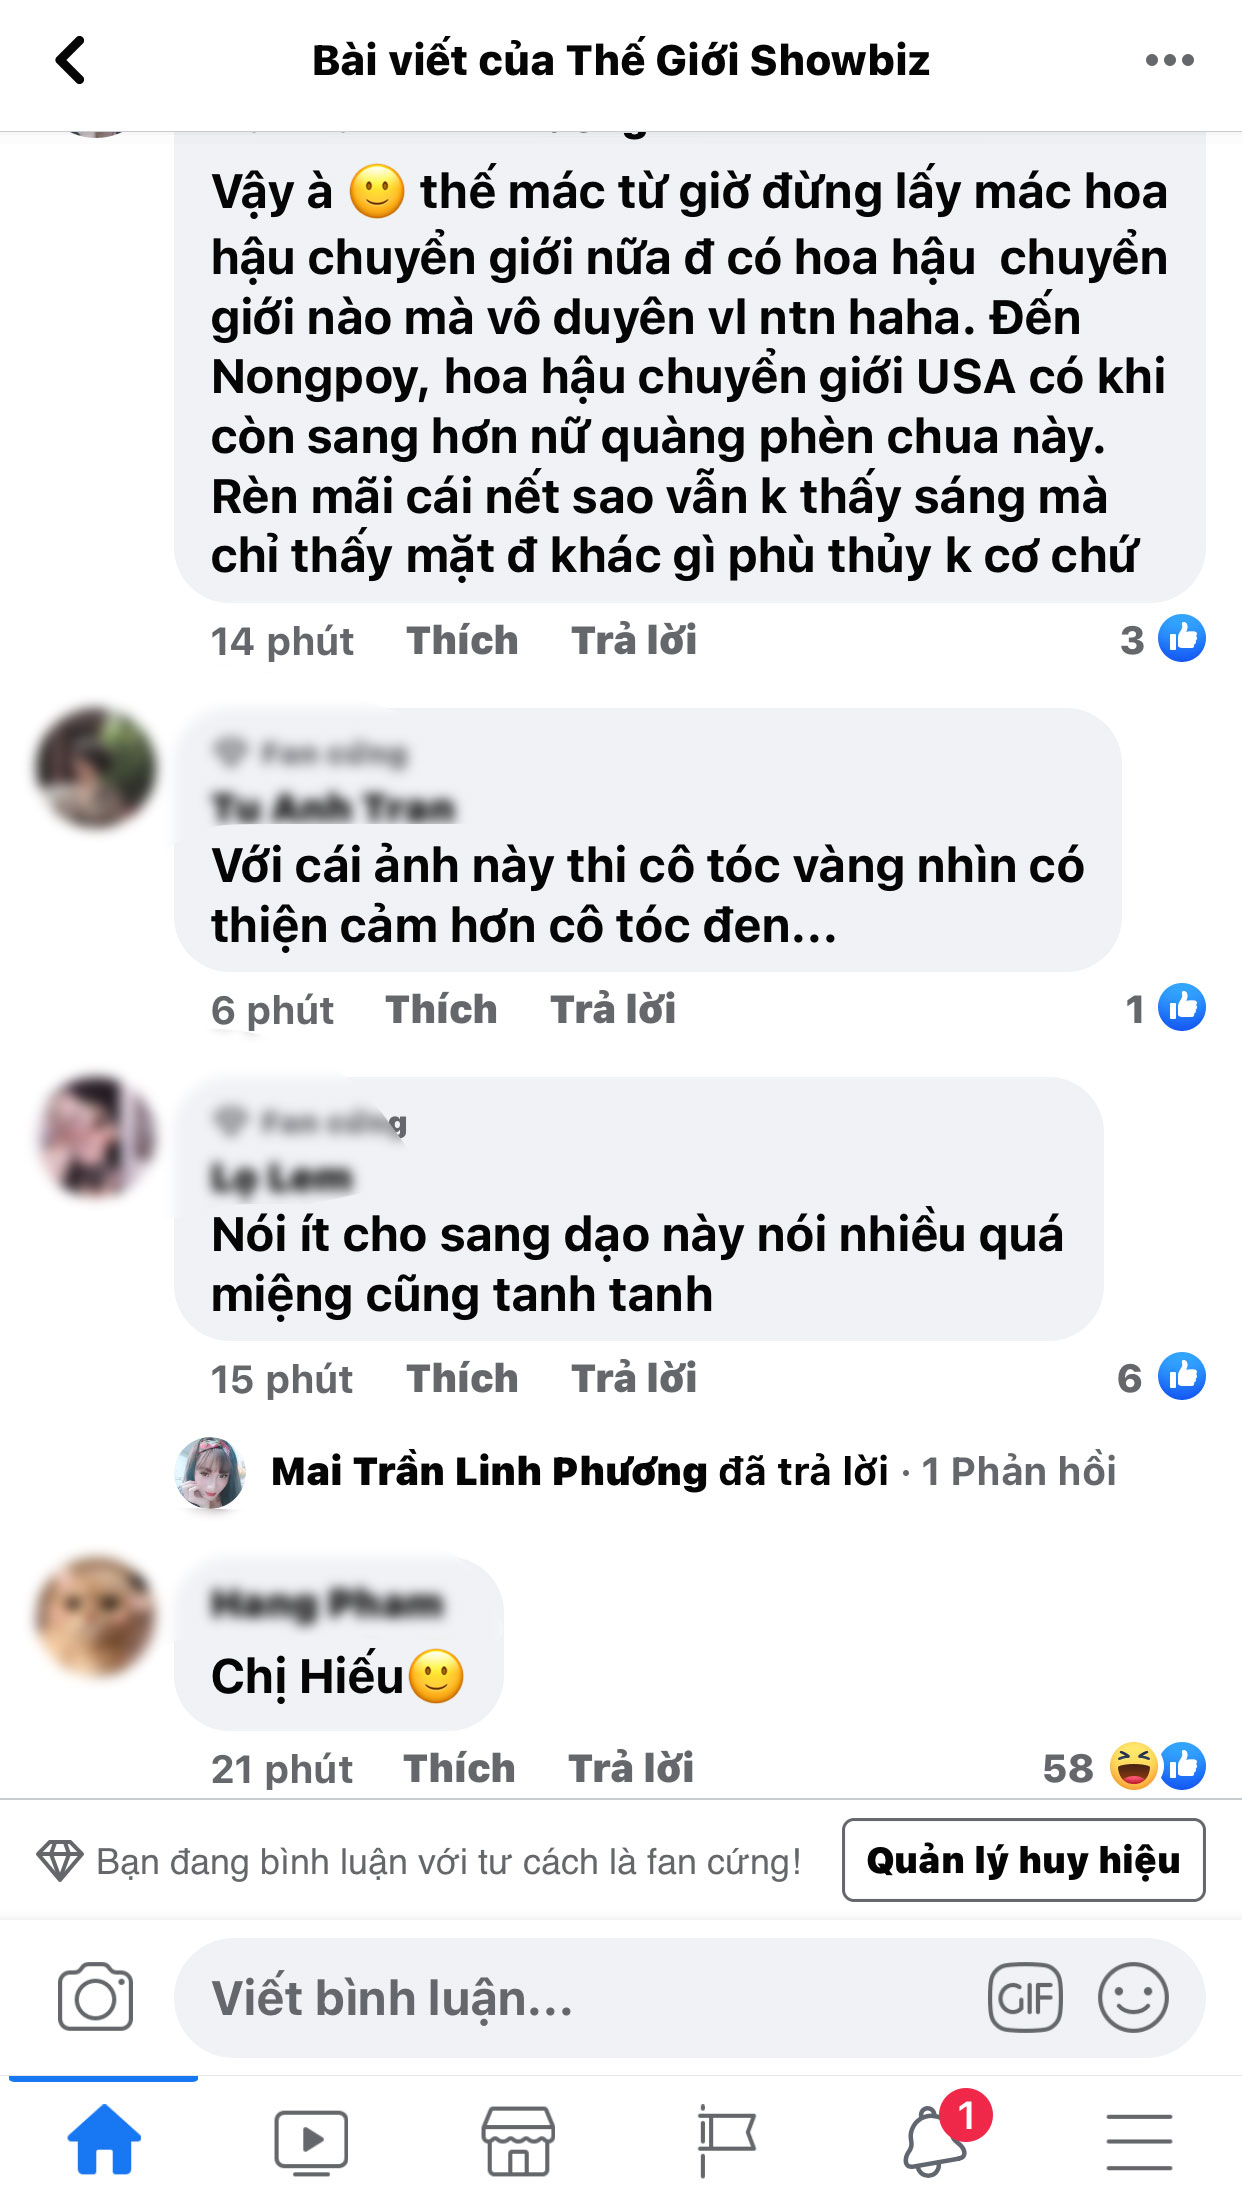 Huong-giang-bat-ngo-bi-cdm-chi-trich-gay-gat-khi-co-hanh-dong-thieu-te-nhi-voi-lam-khanh-chi-4